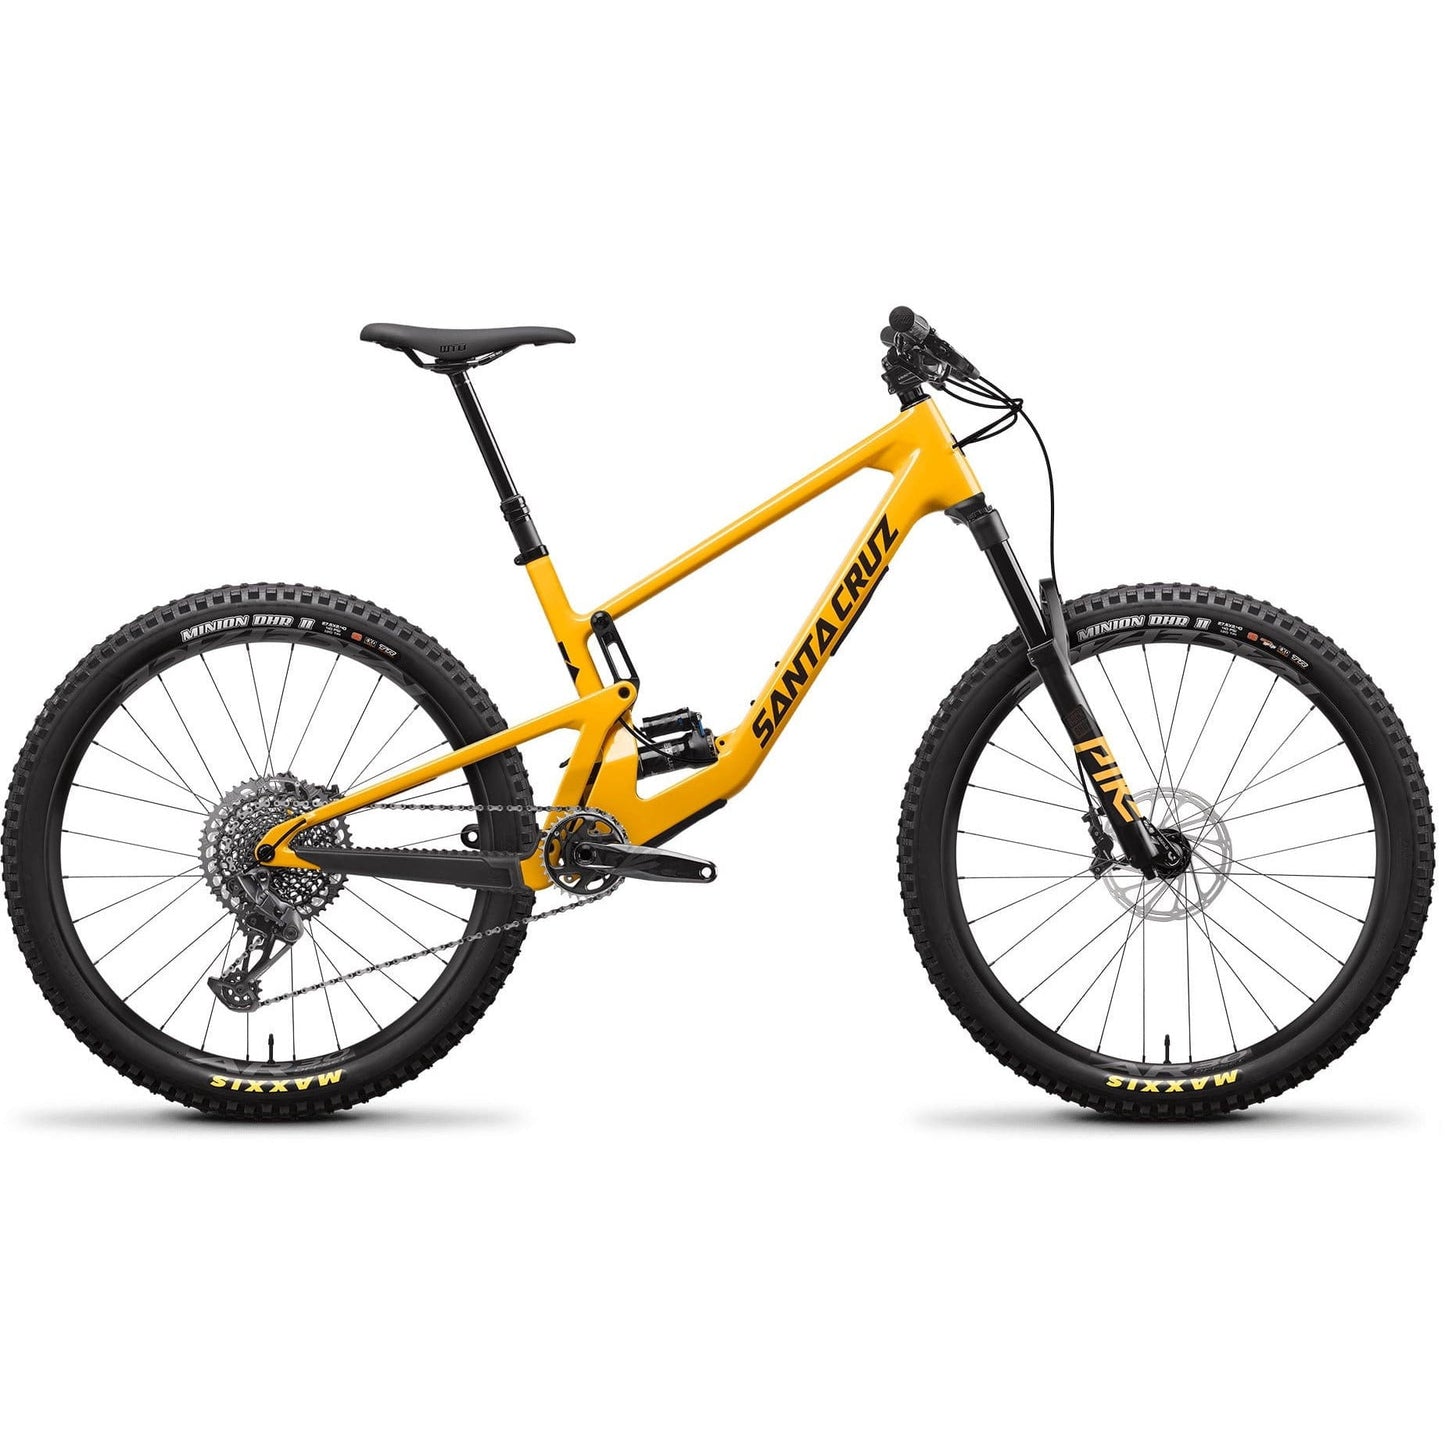 Santa Cruz 5010 C Mountain Bike - S-Kit (2021)